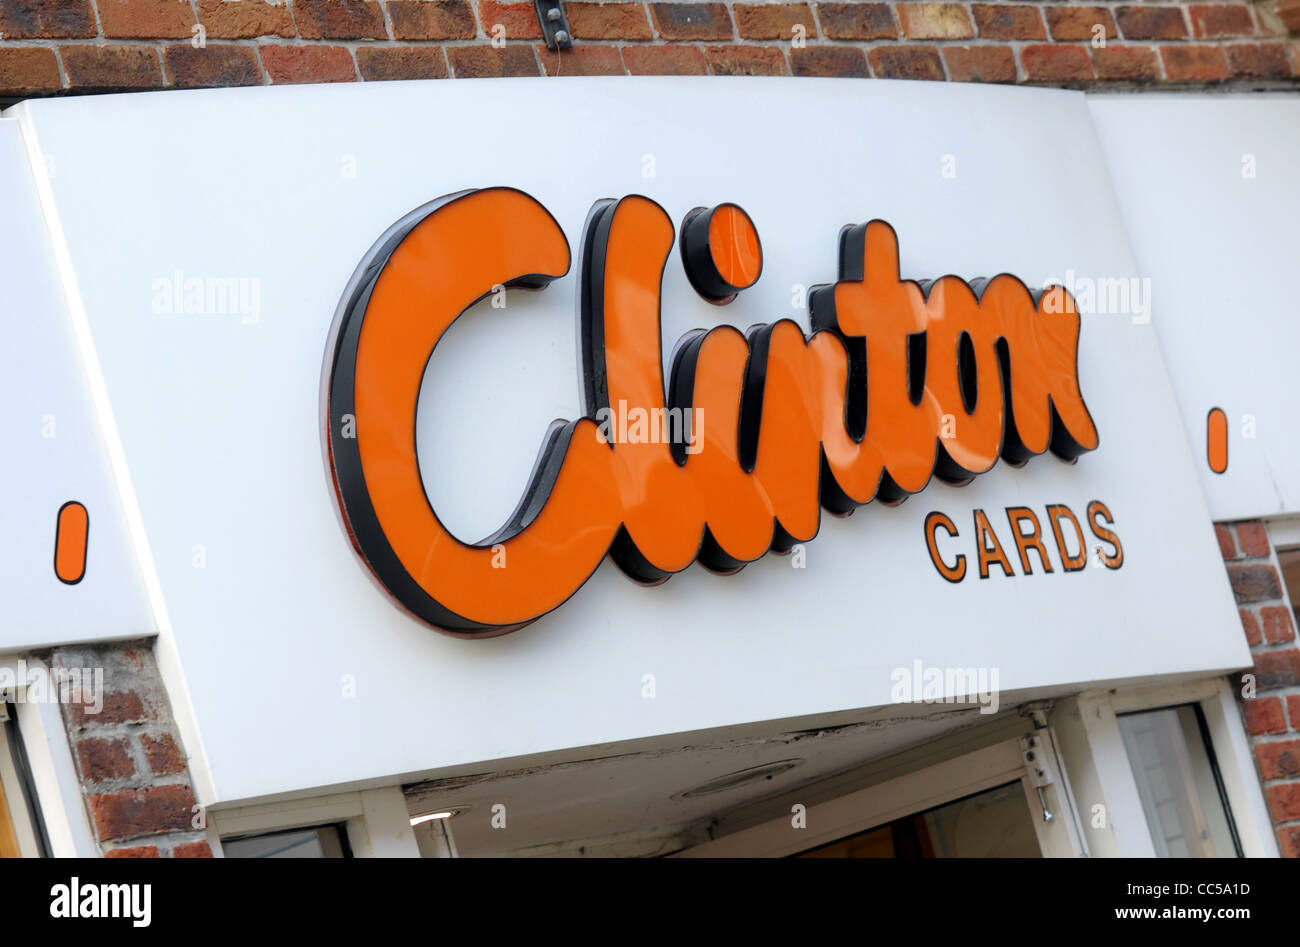 Boutique Cartes Clinton, UK Banque D'Images